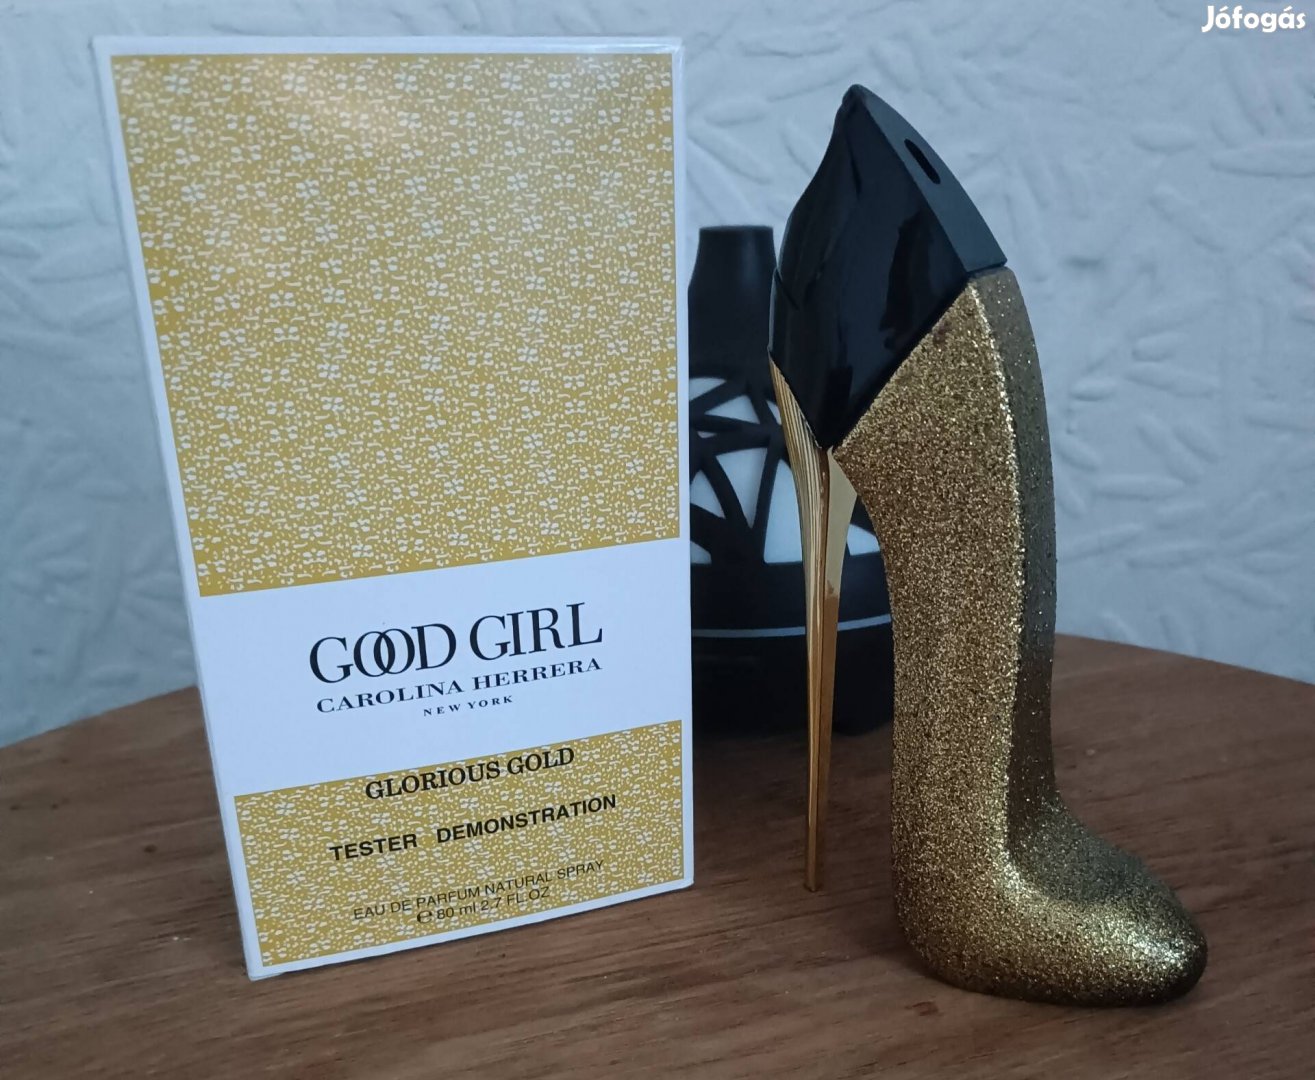 Carolina Herrera - Good Girl - Glorious Gold Limitált kiadás!!!